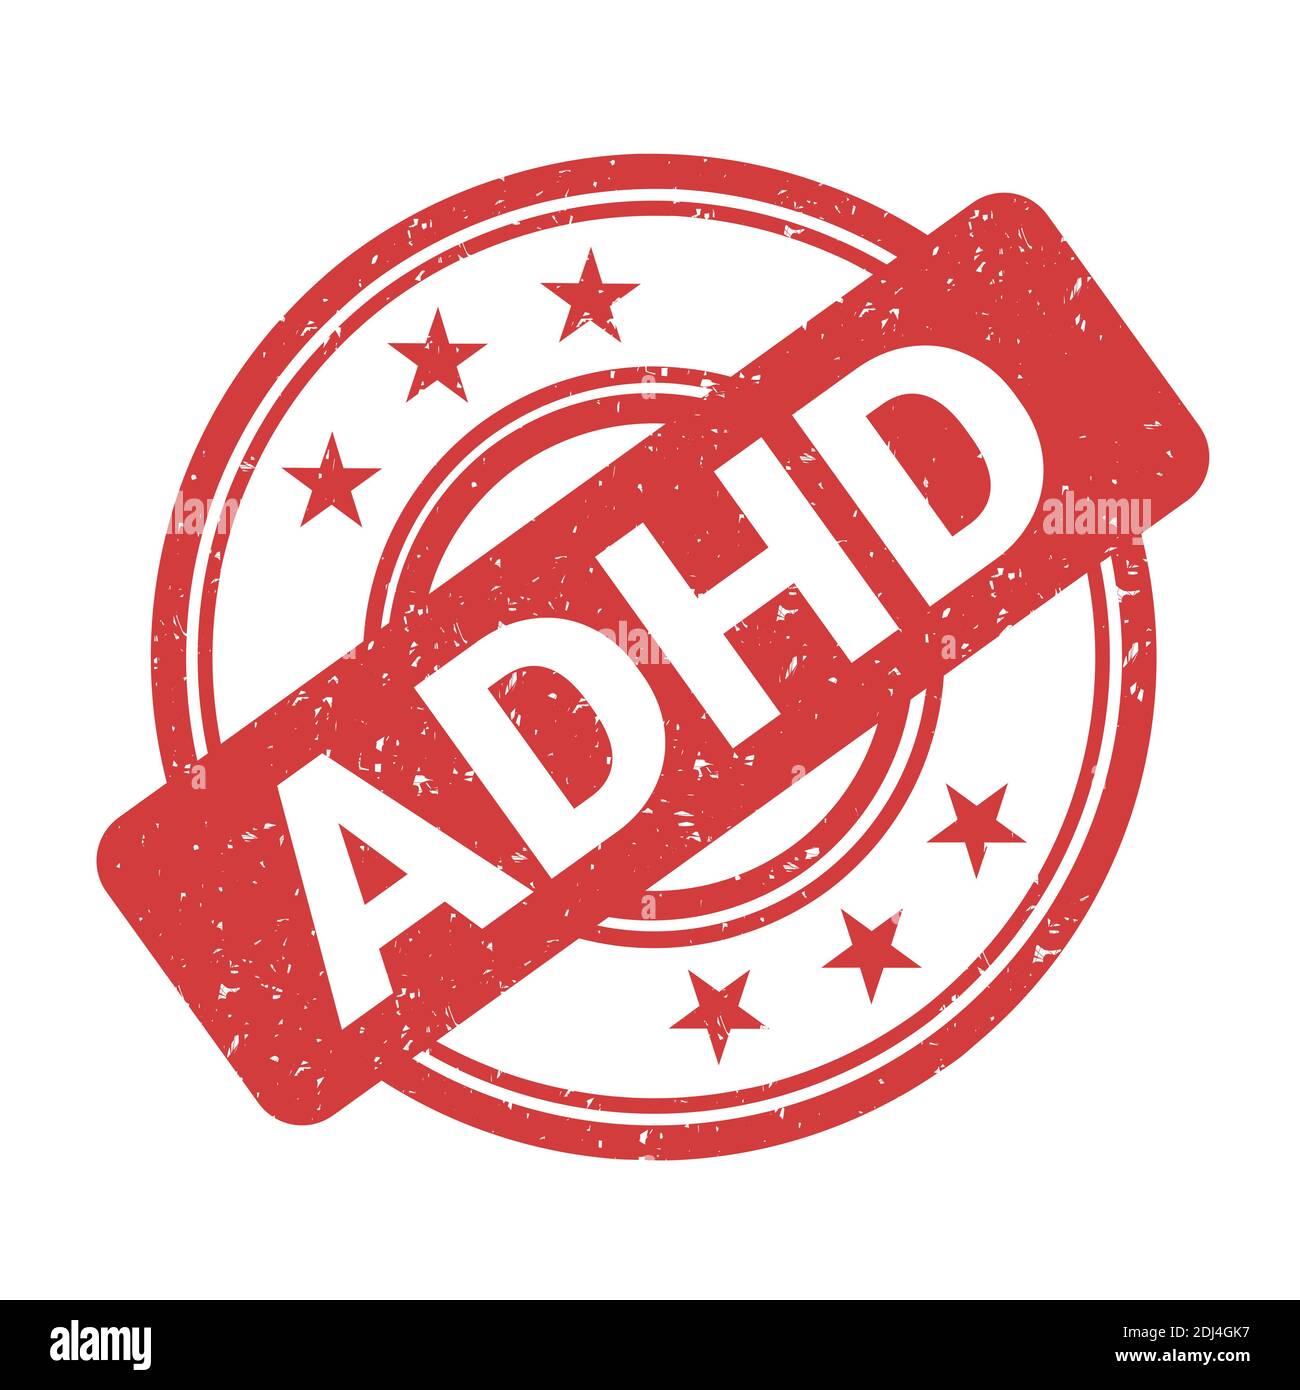 Timbro ADHD - conferma positiva e certificazione della diagnosi. Disturbi mentali - iperattività e disattenzione. Etichettatura del paziente. Illus vettore Foto Stock